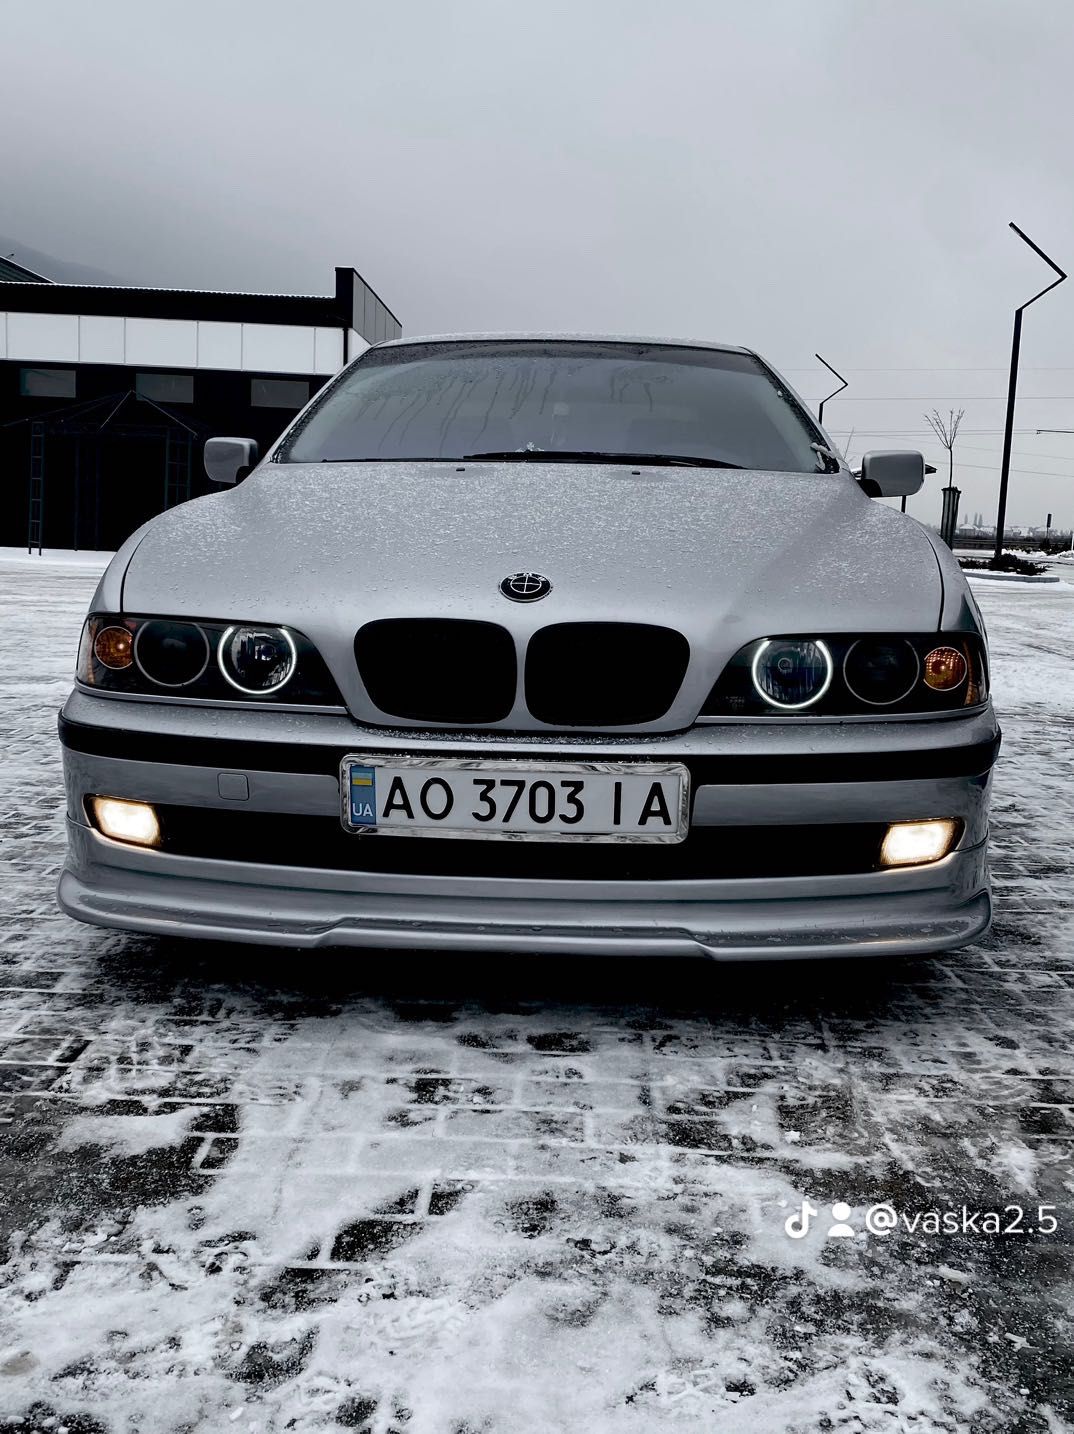 Продам BMW 1999 рік стан 10/10. 2,5 дізель